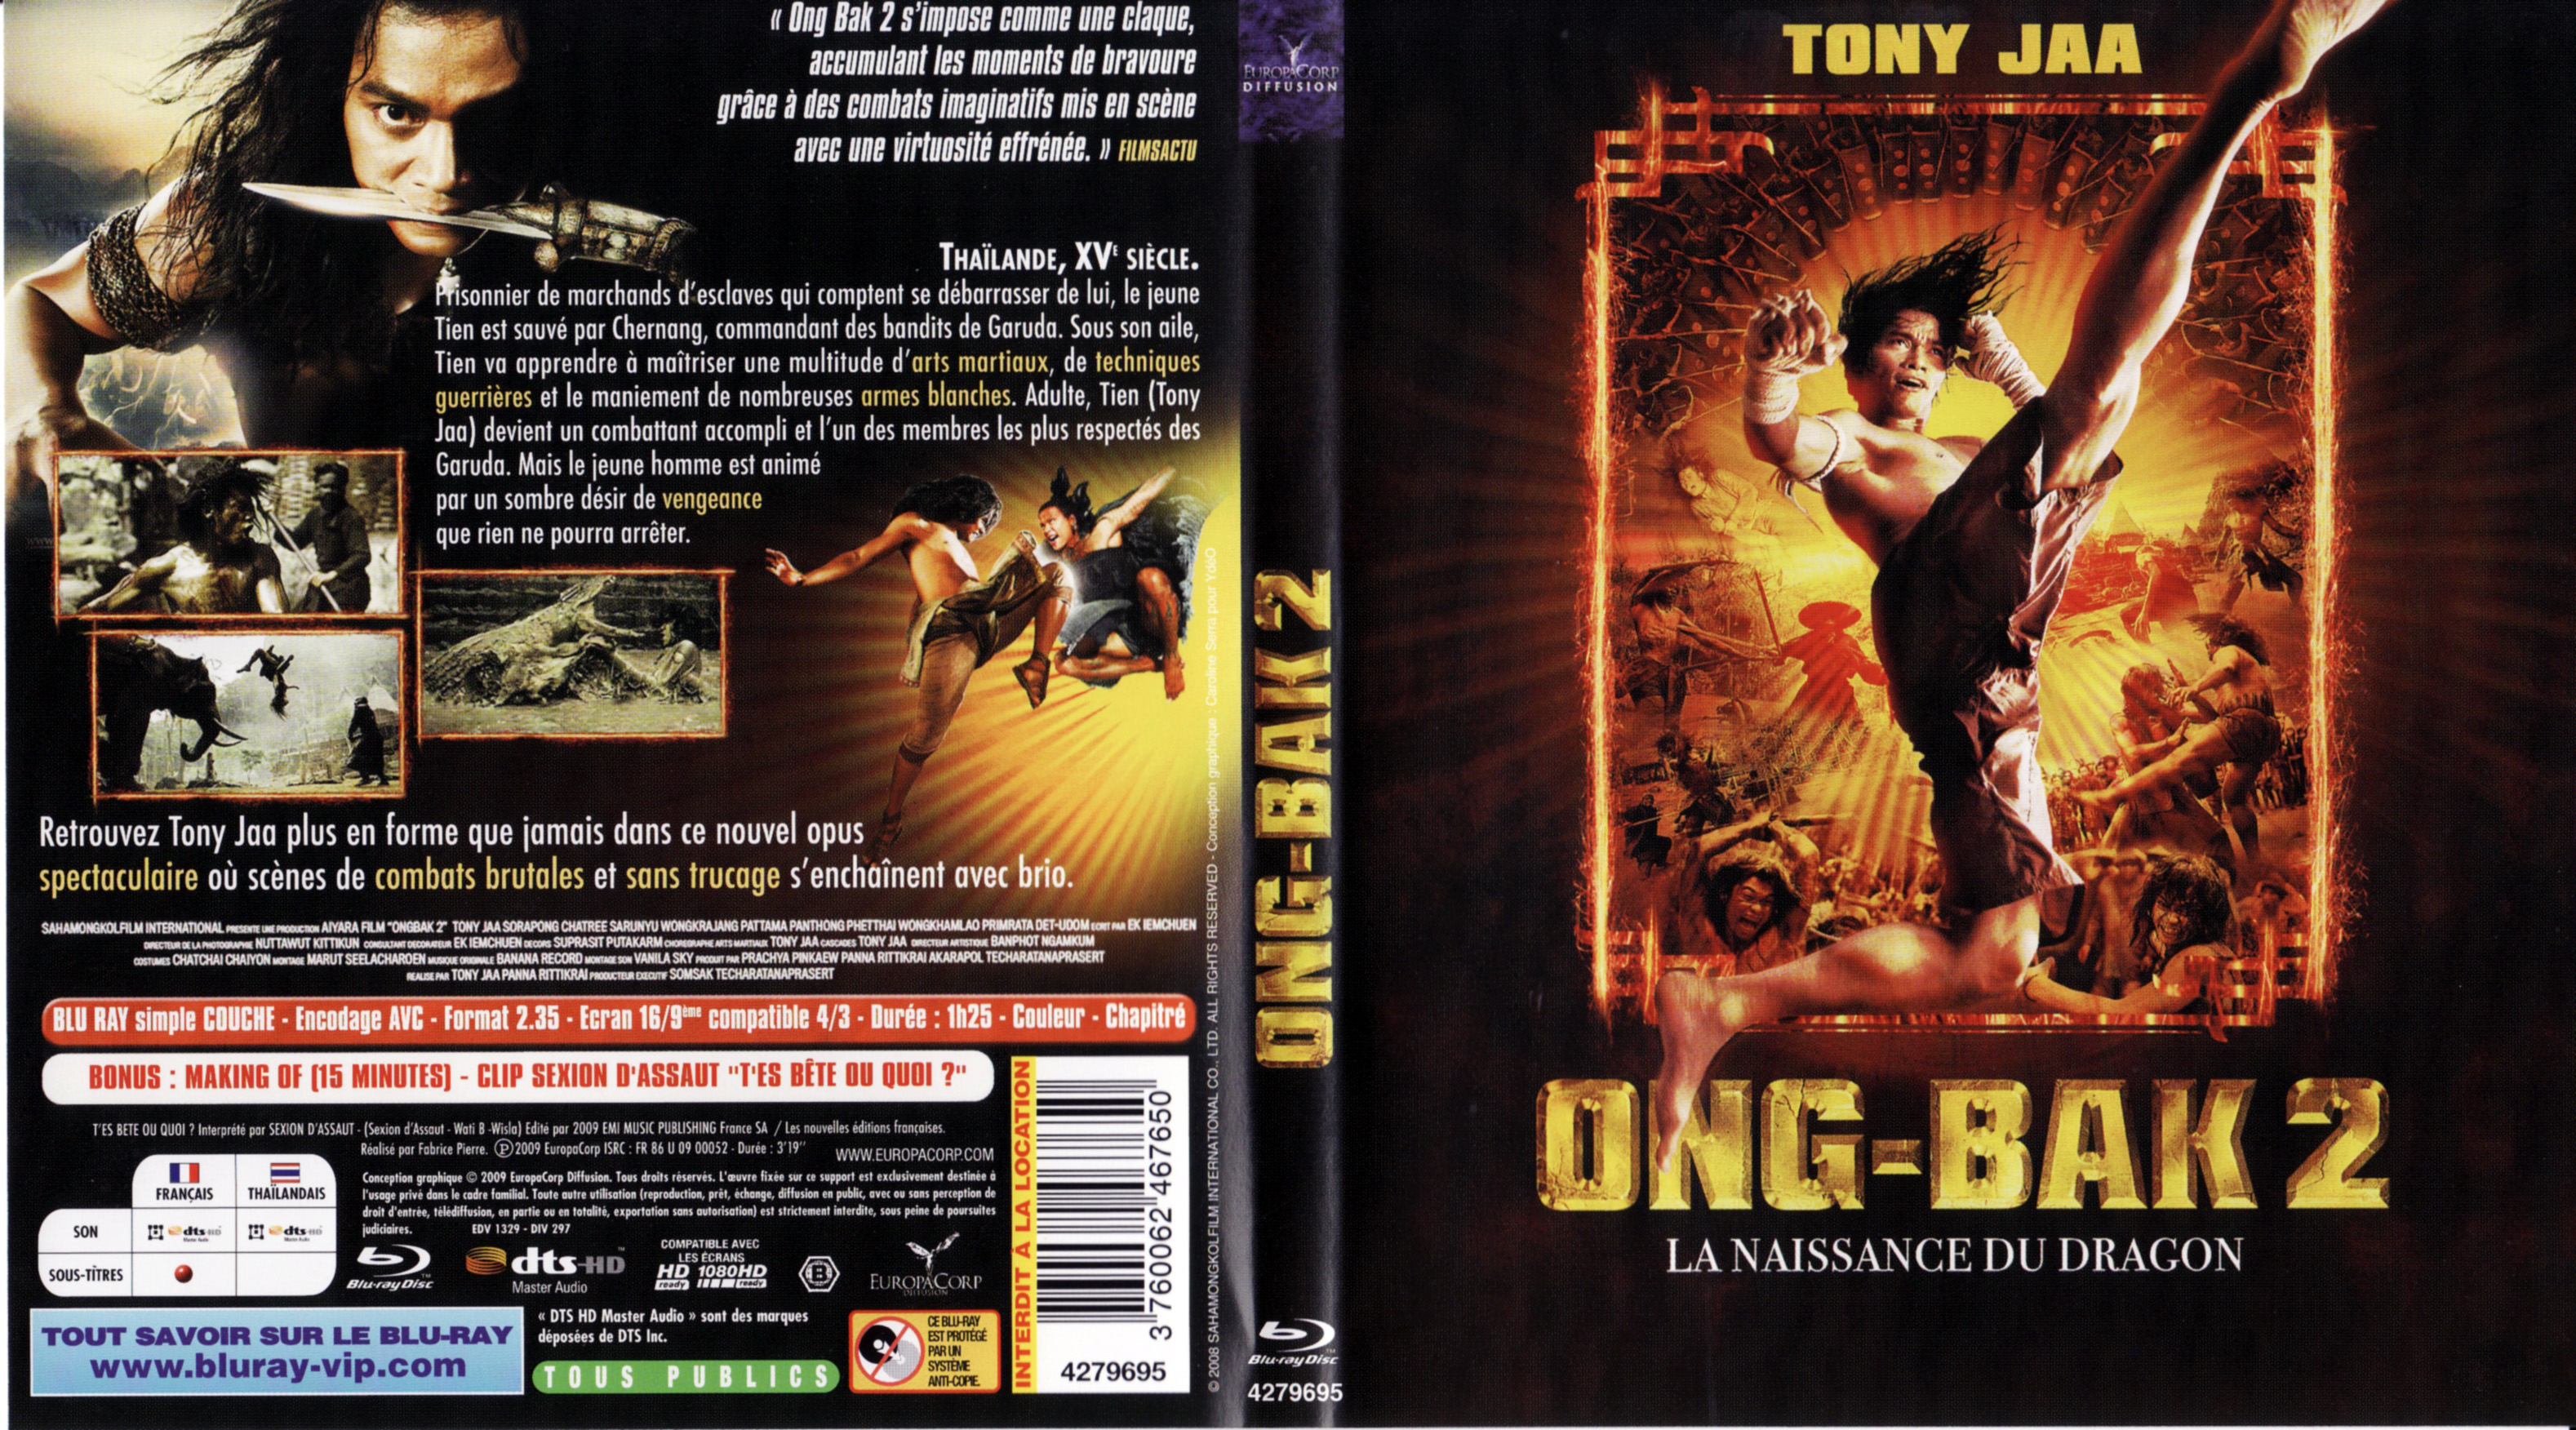 Jaquette DVD Ong-bak 2 (BLU-RAY)